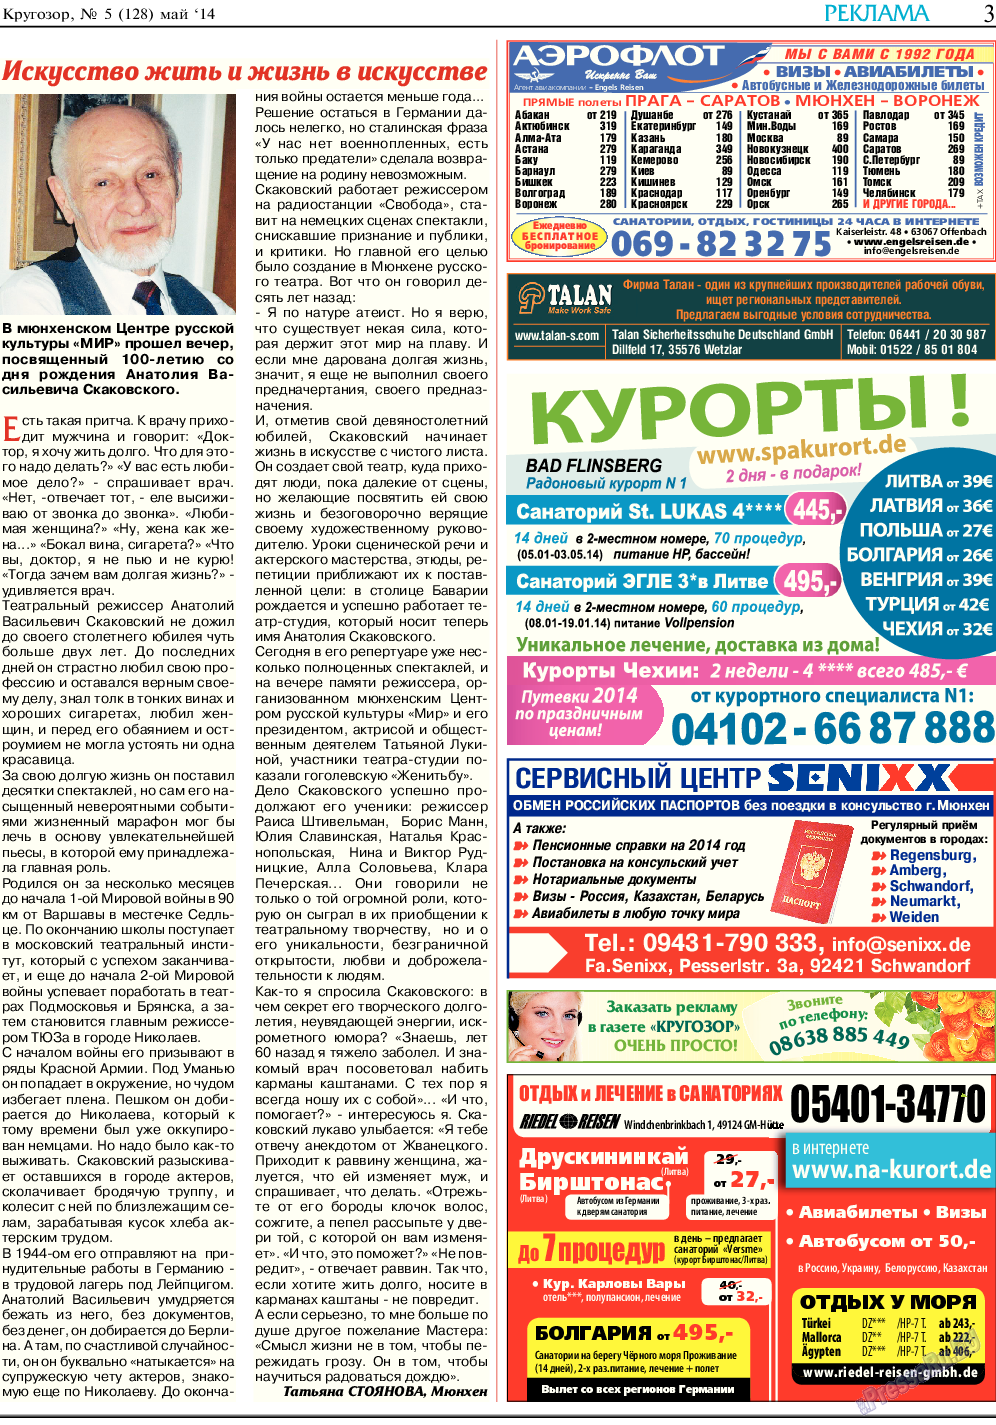 Кругозор, газета. 2014 №5 стр.3